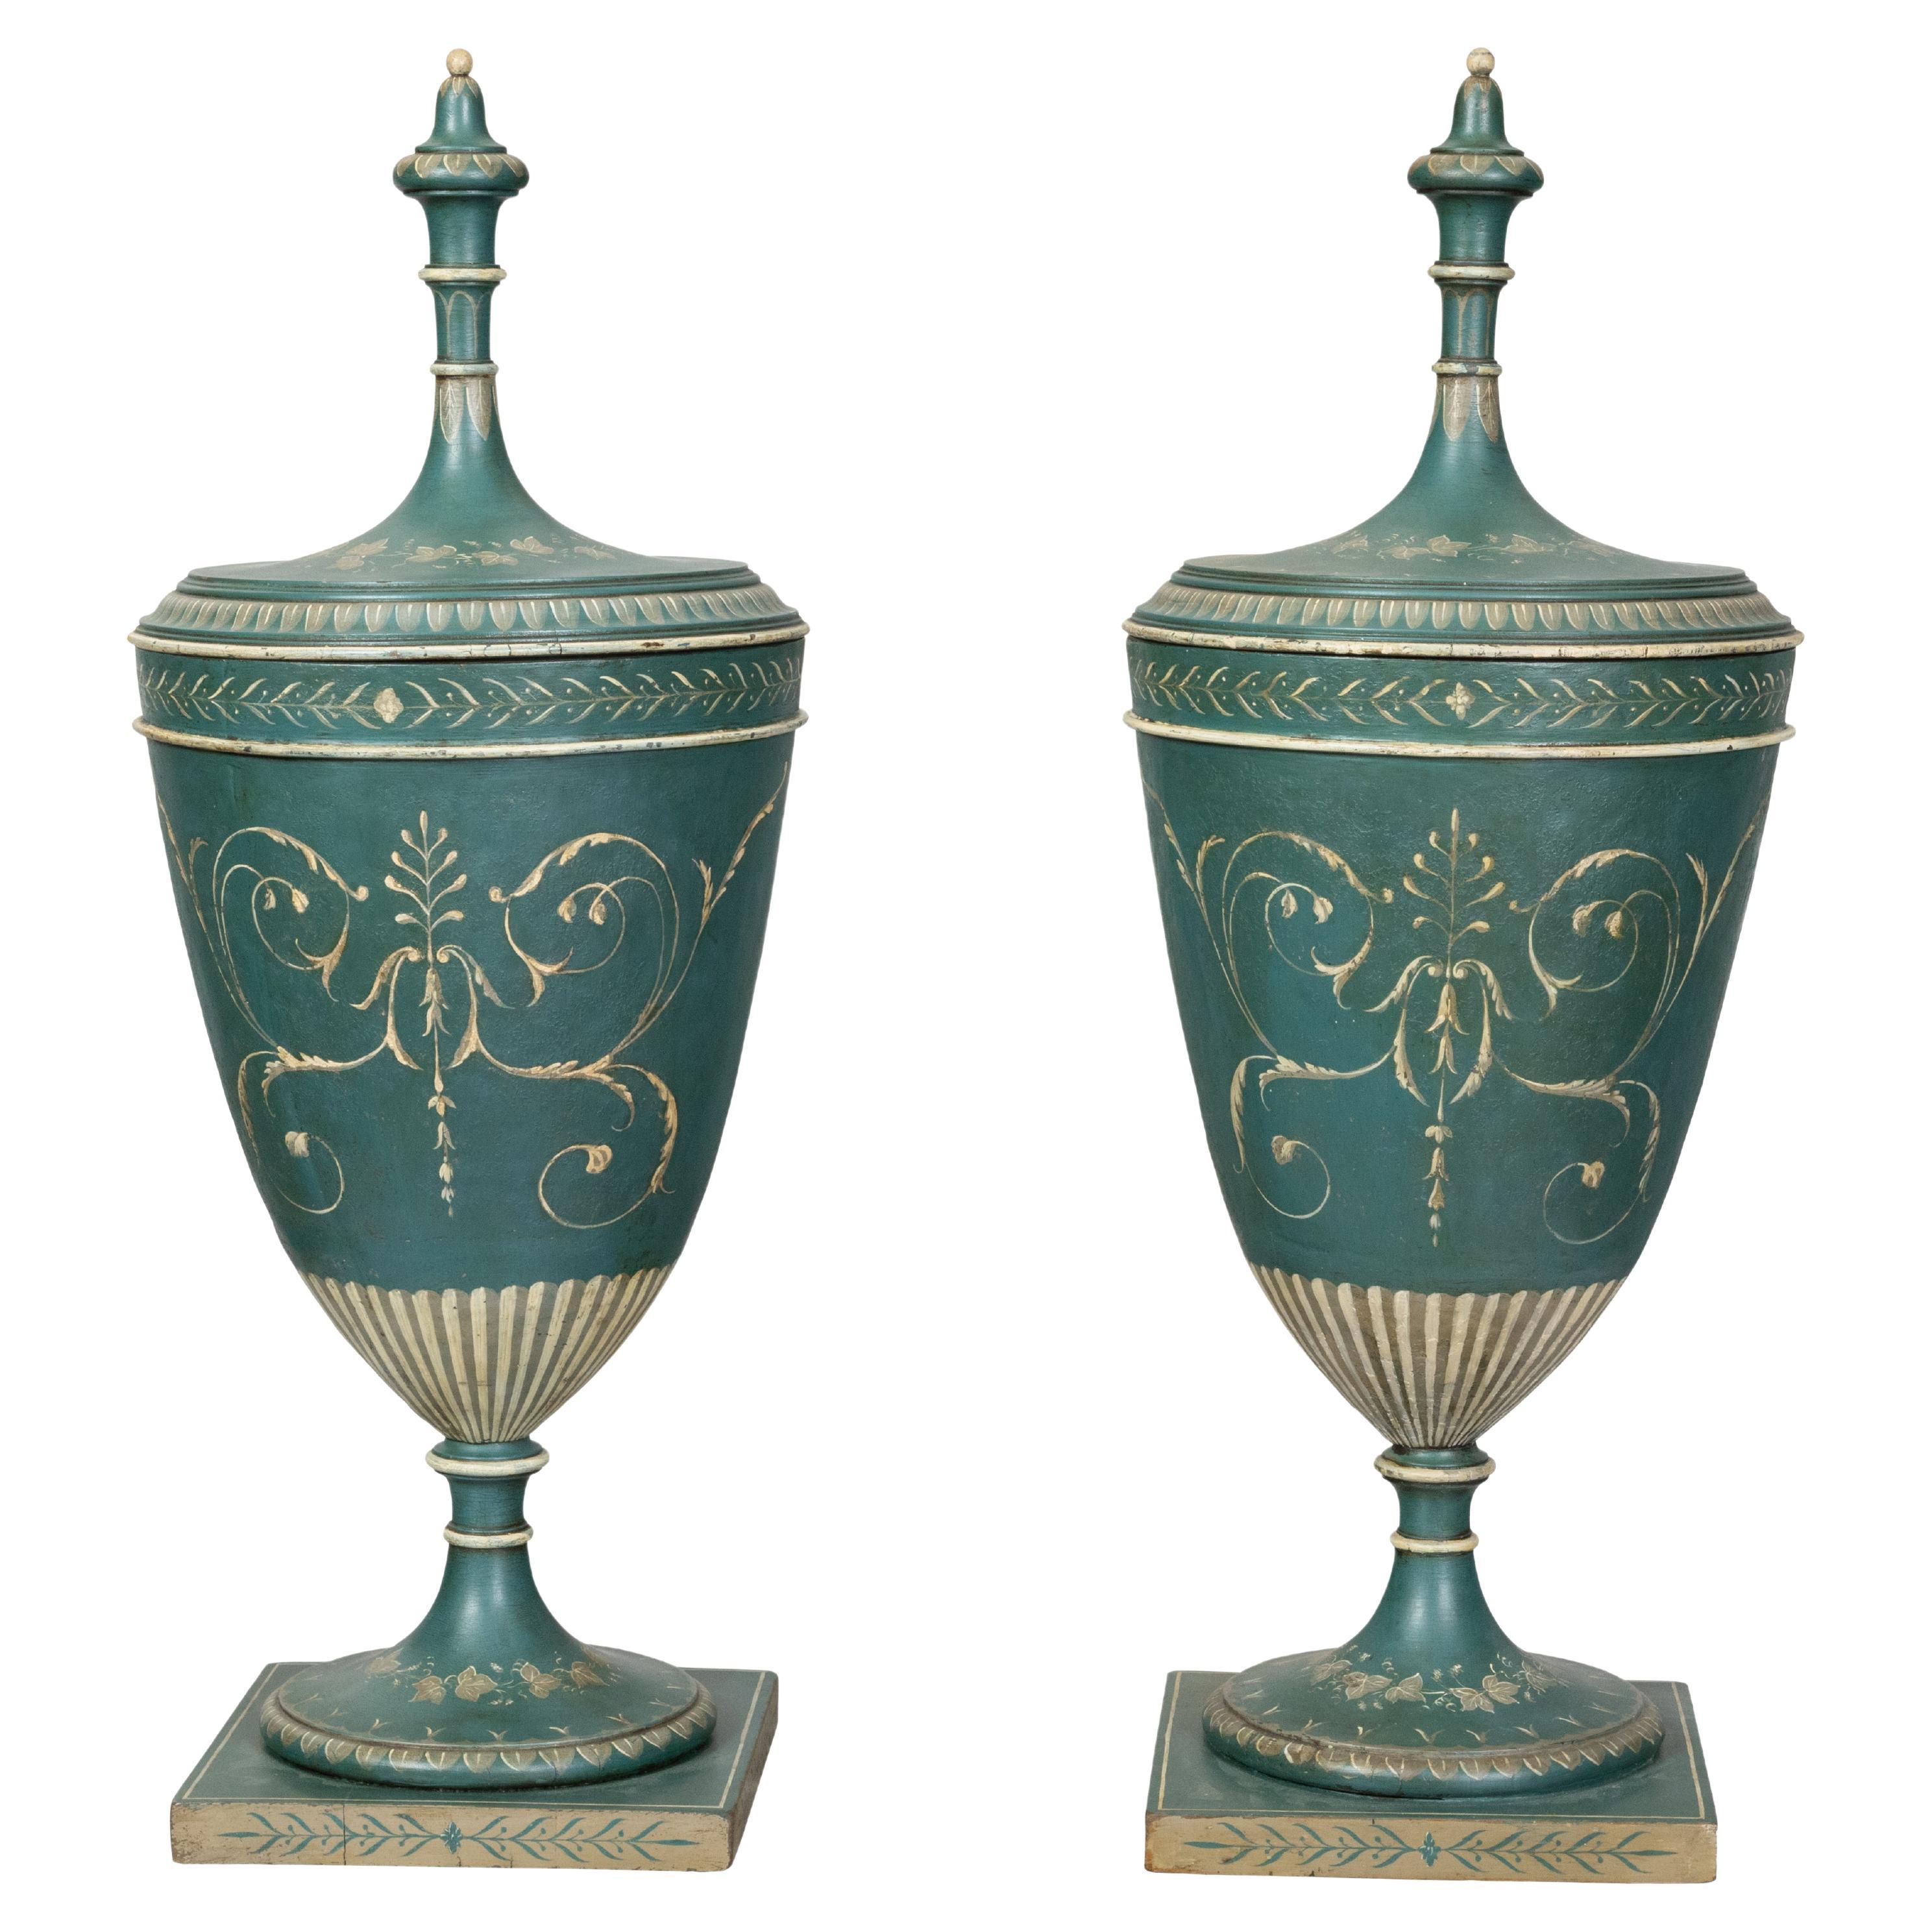 Paire d'urnes à couvercle anglaises de style néoclassique du 19ème siècle avec couvercle peint en vert